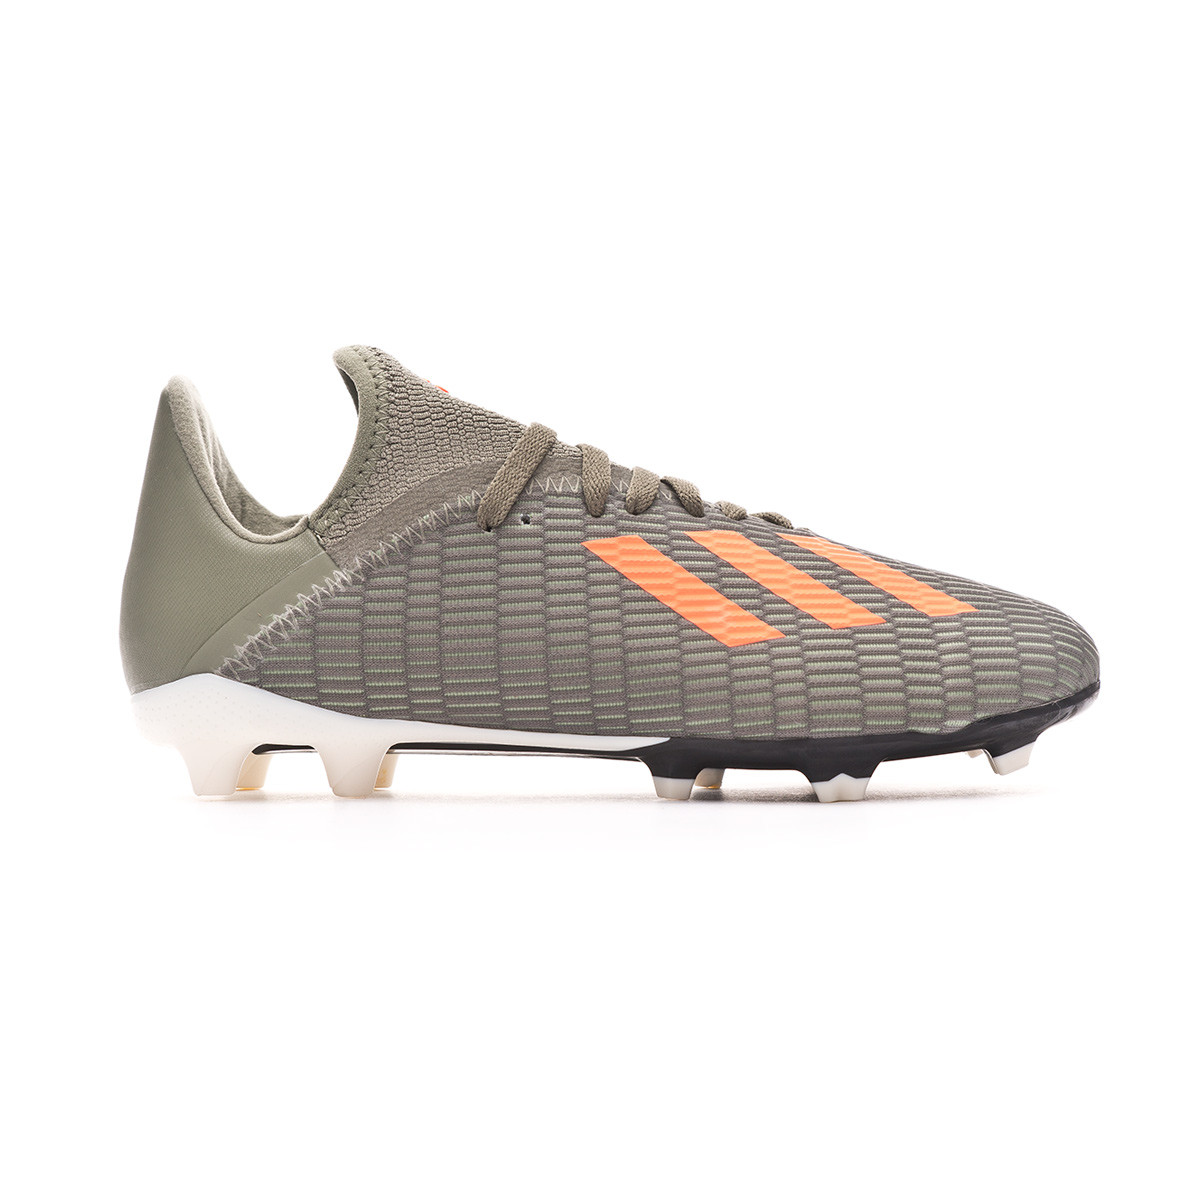 adidas football boots x19 3